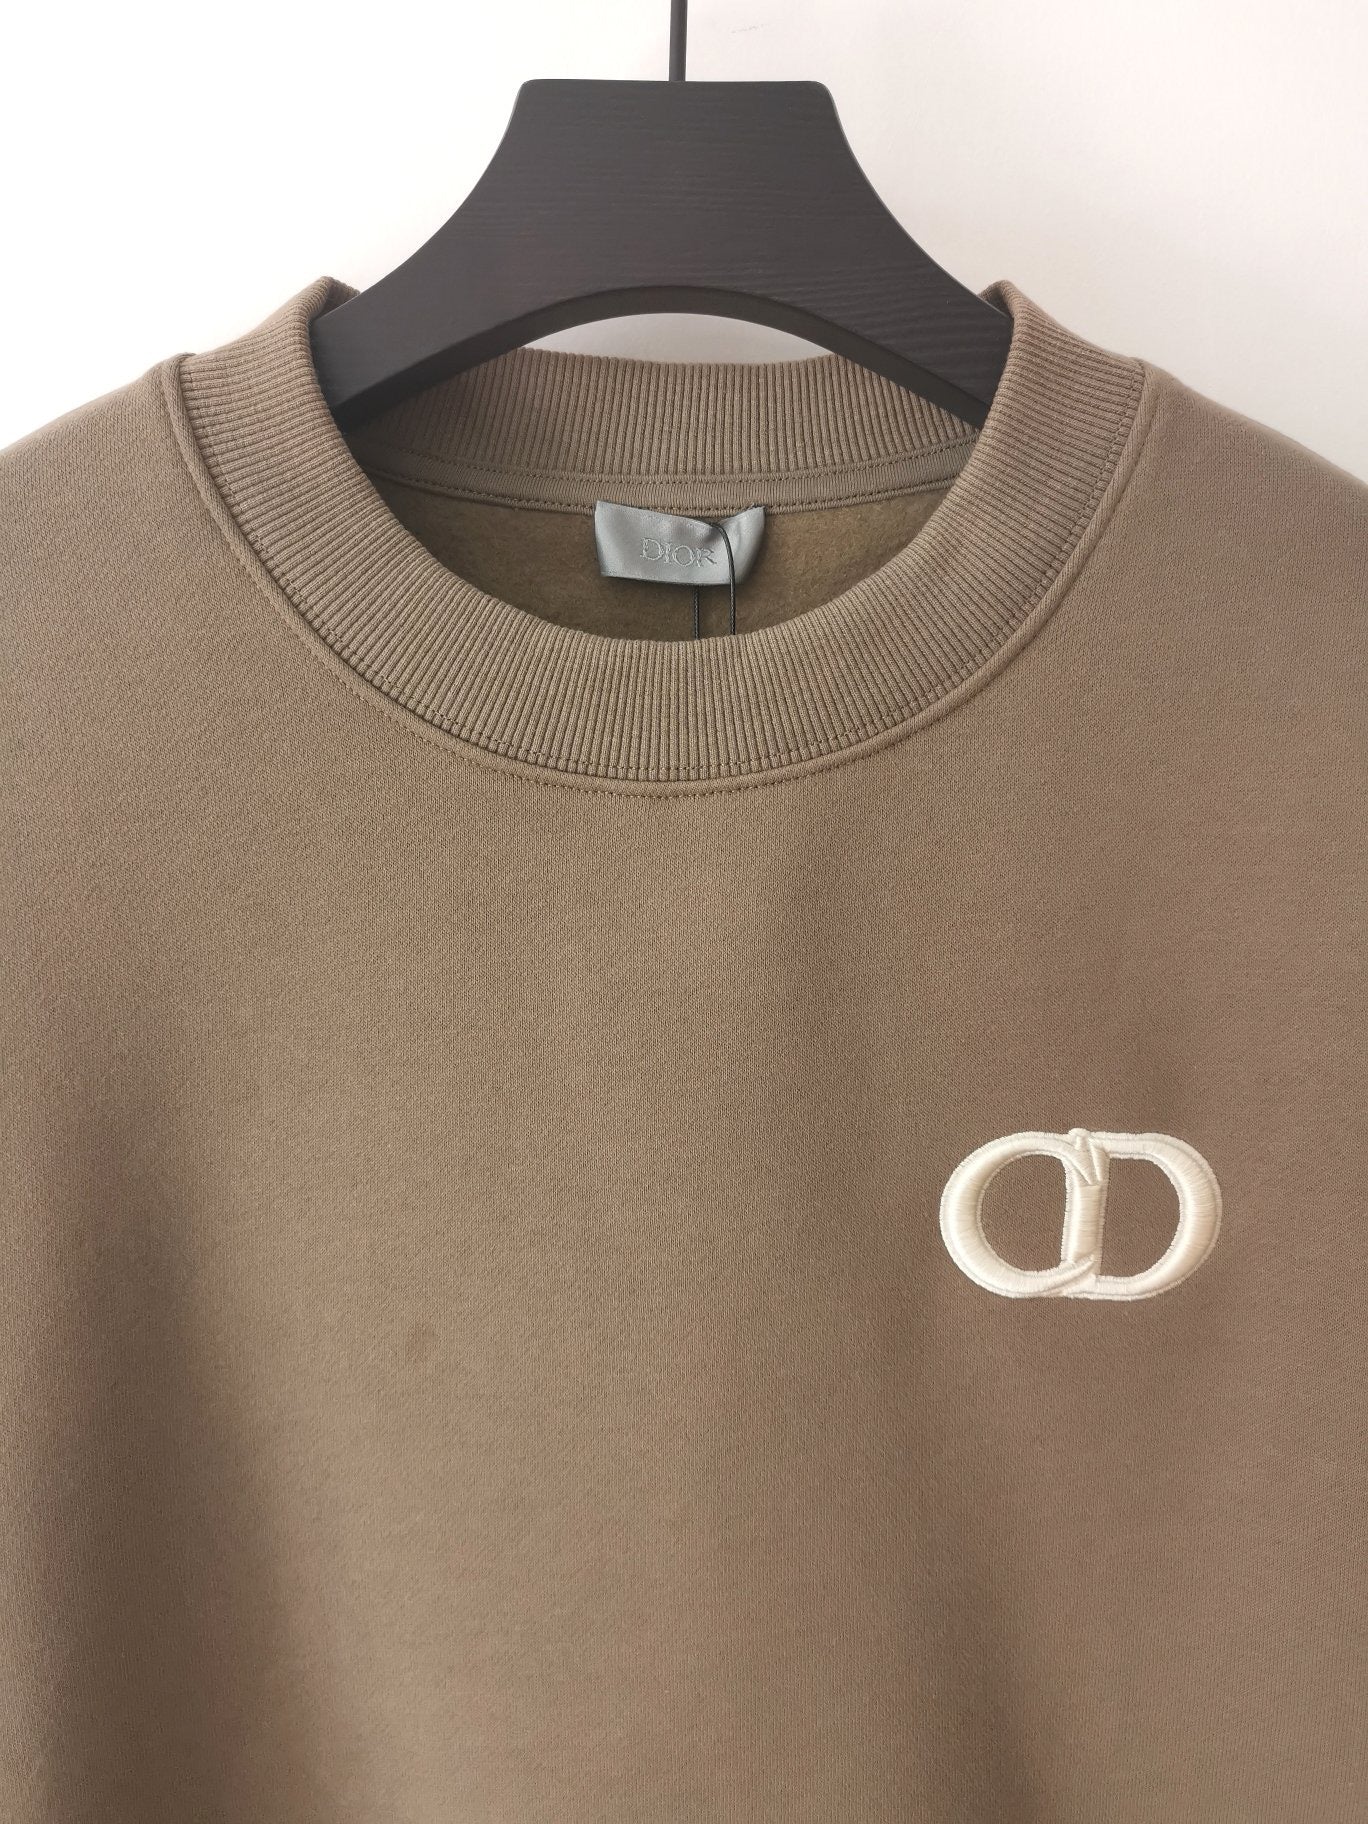 Brown Sweatshirt - Size S